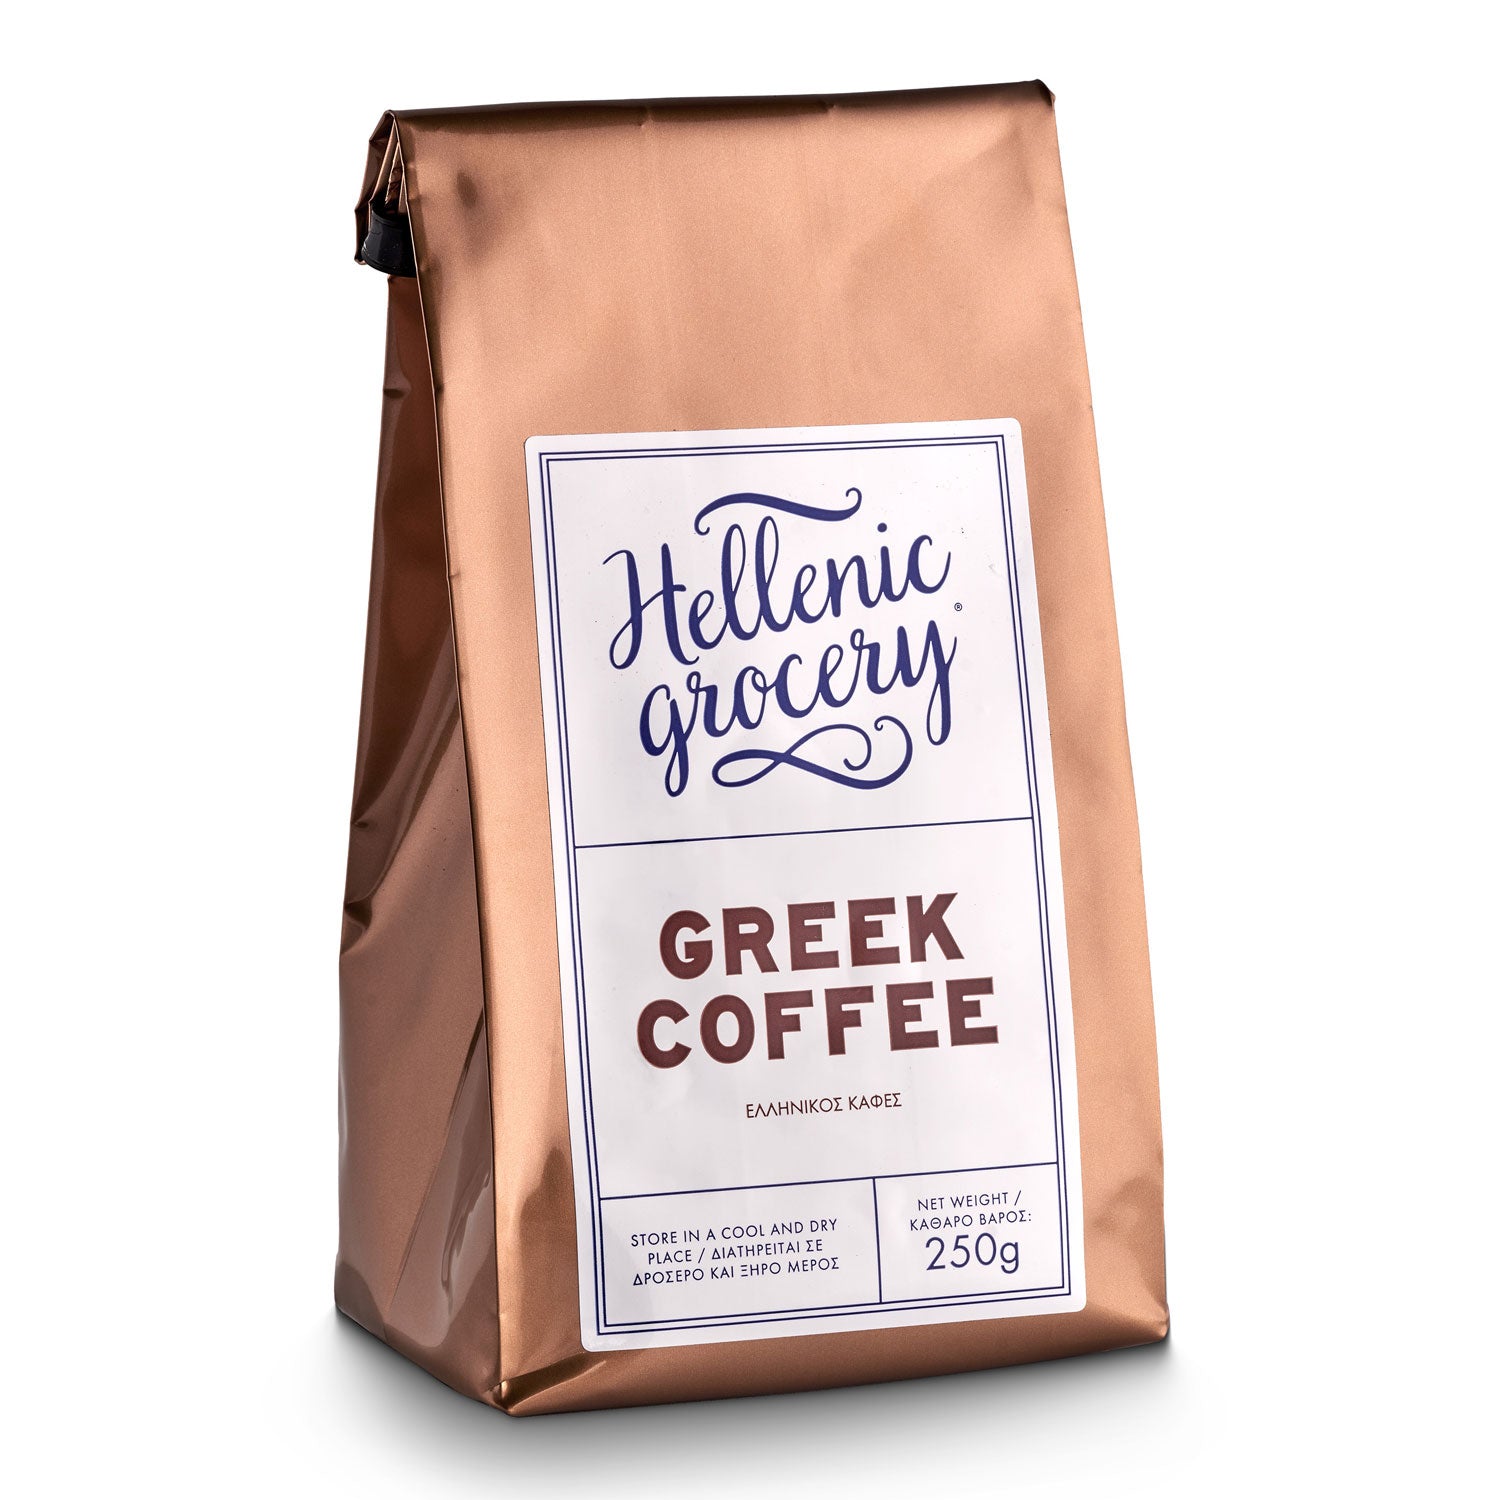 Παραδοσιακός Ελληνικός Καφές - 250 γρ - Hellenic Grocery